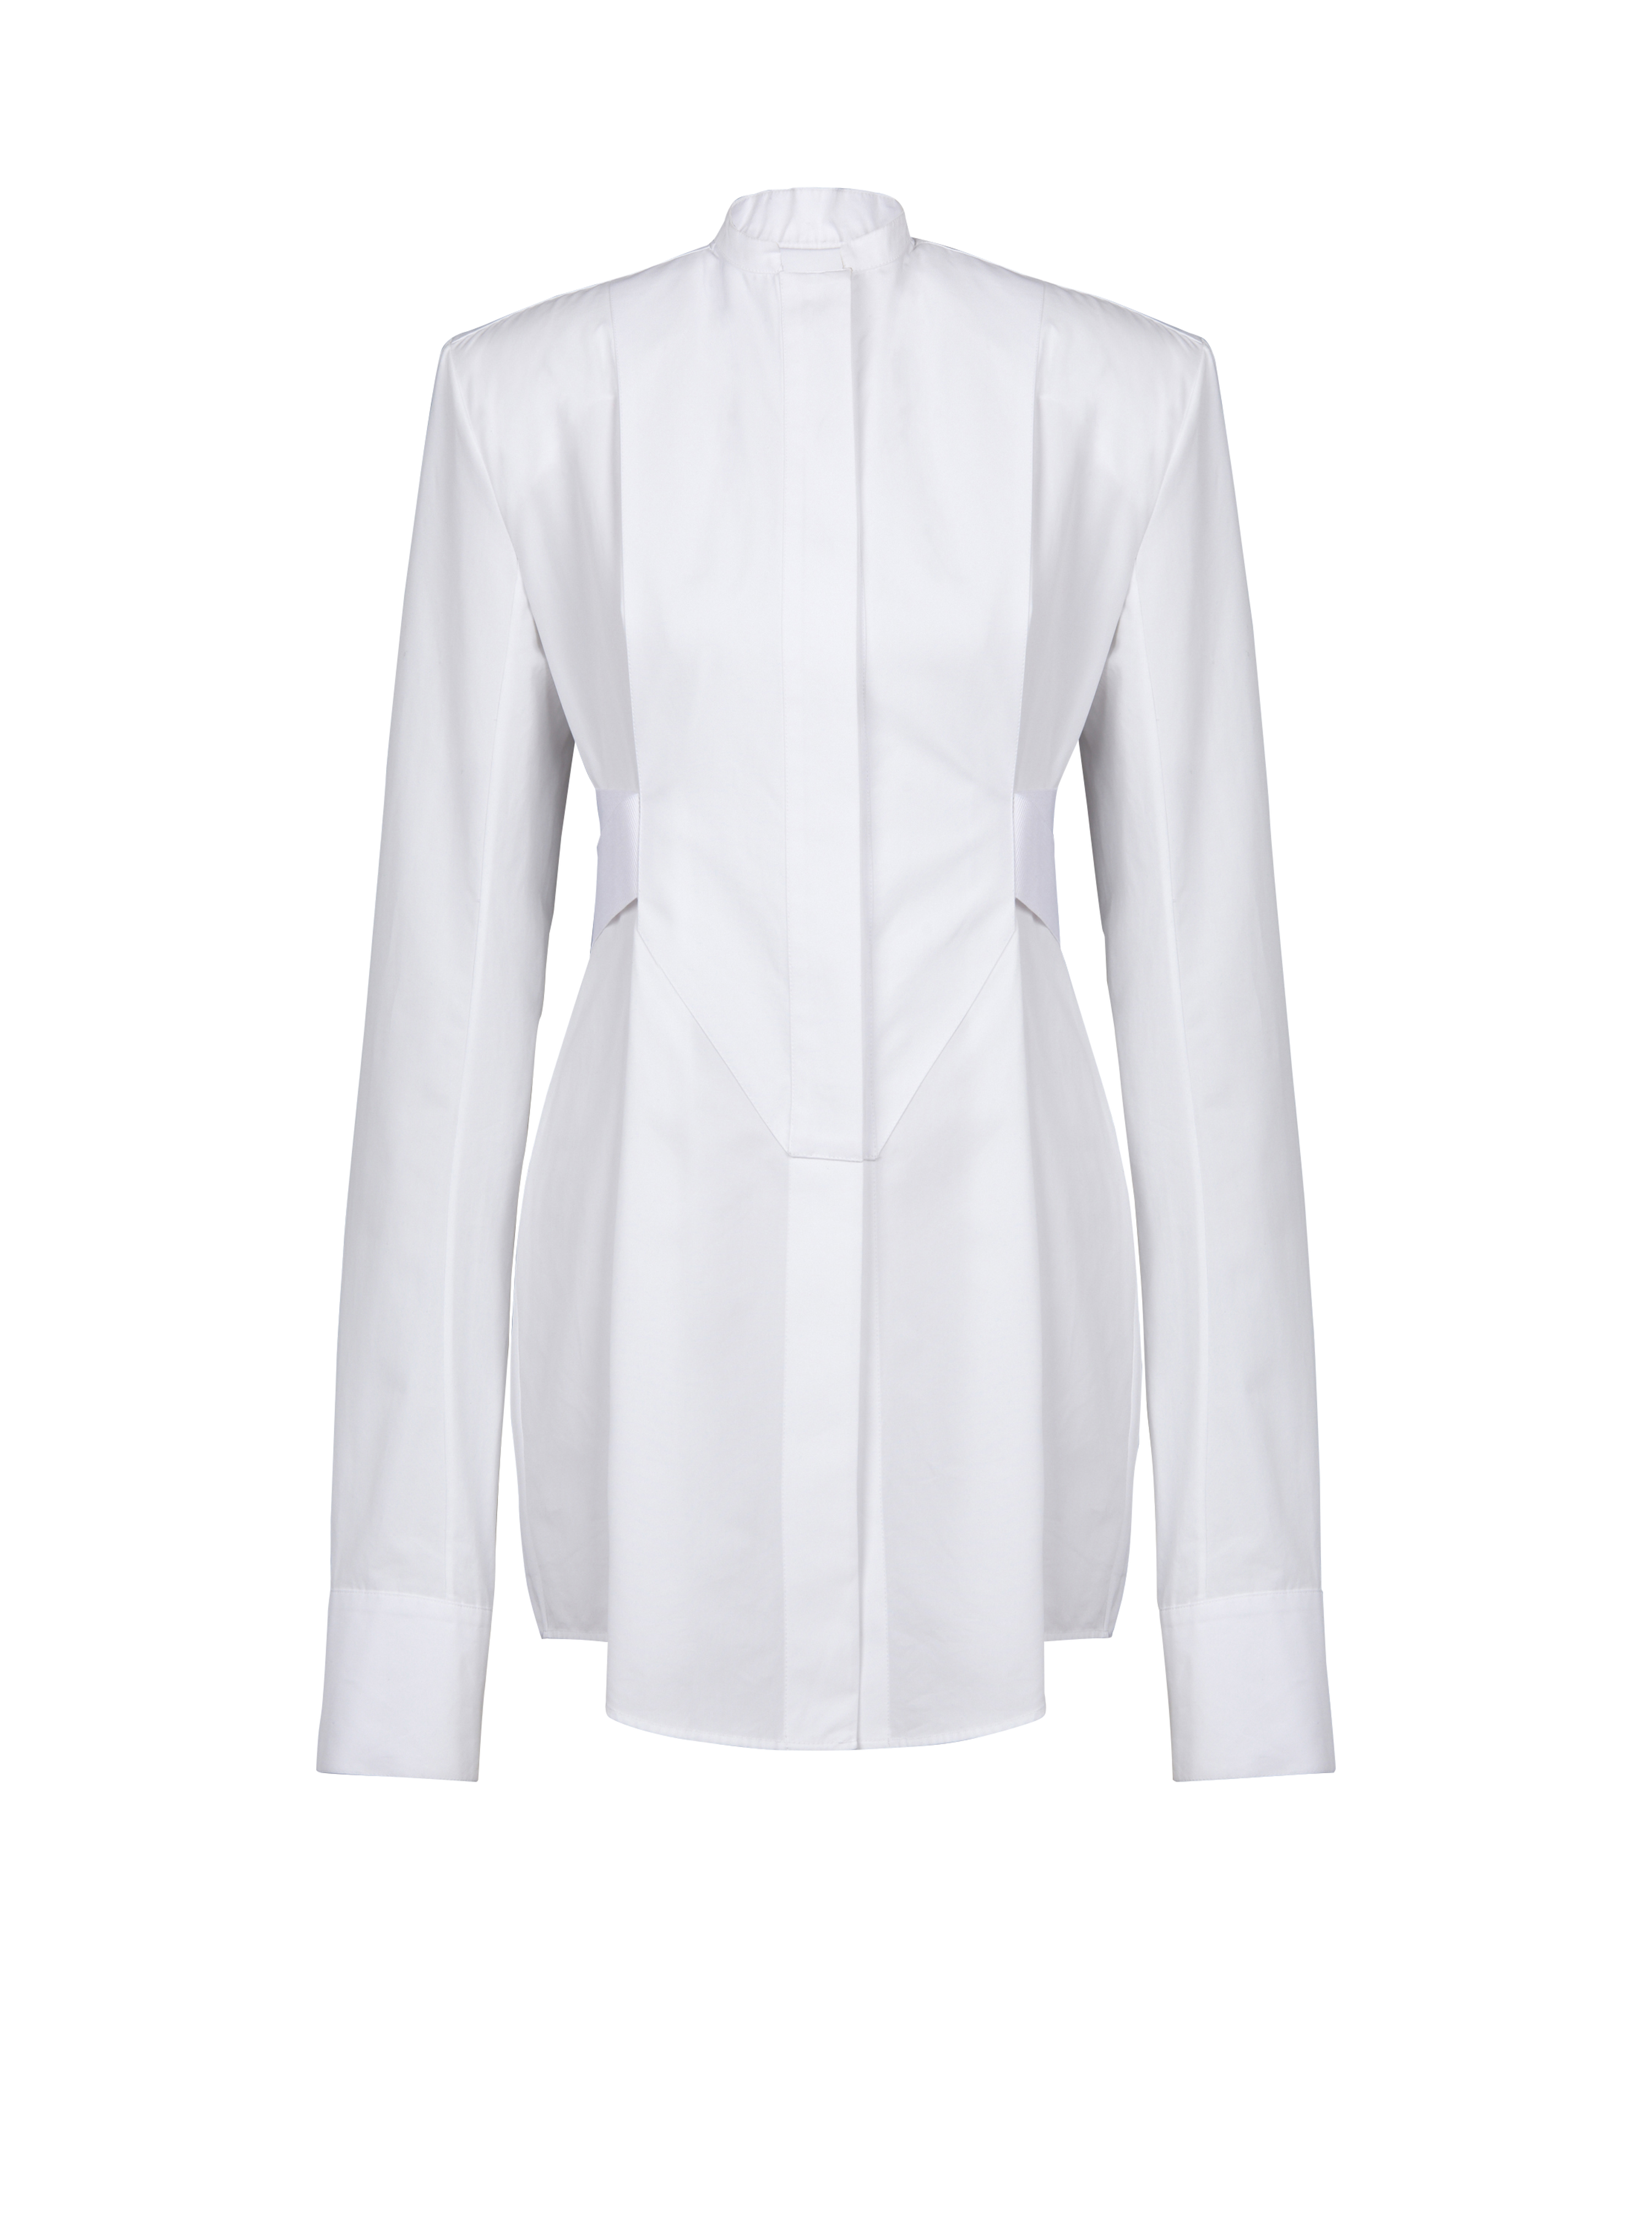 Camicia lunga in cotone, bianco